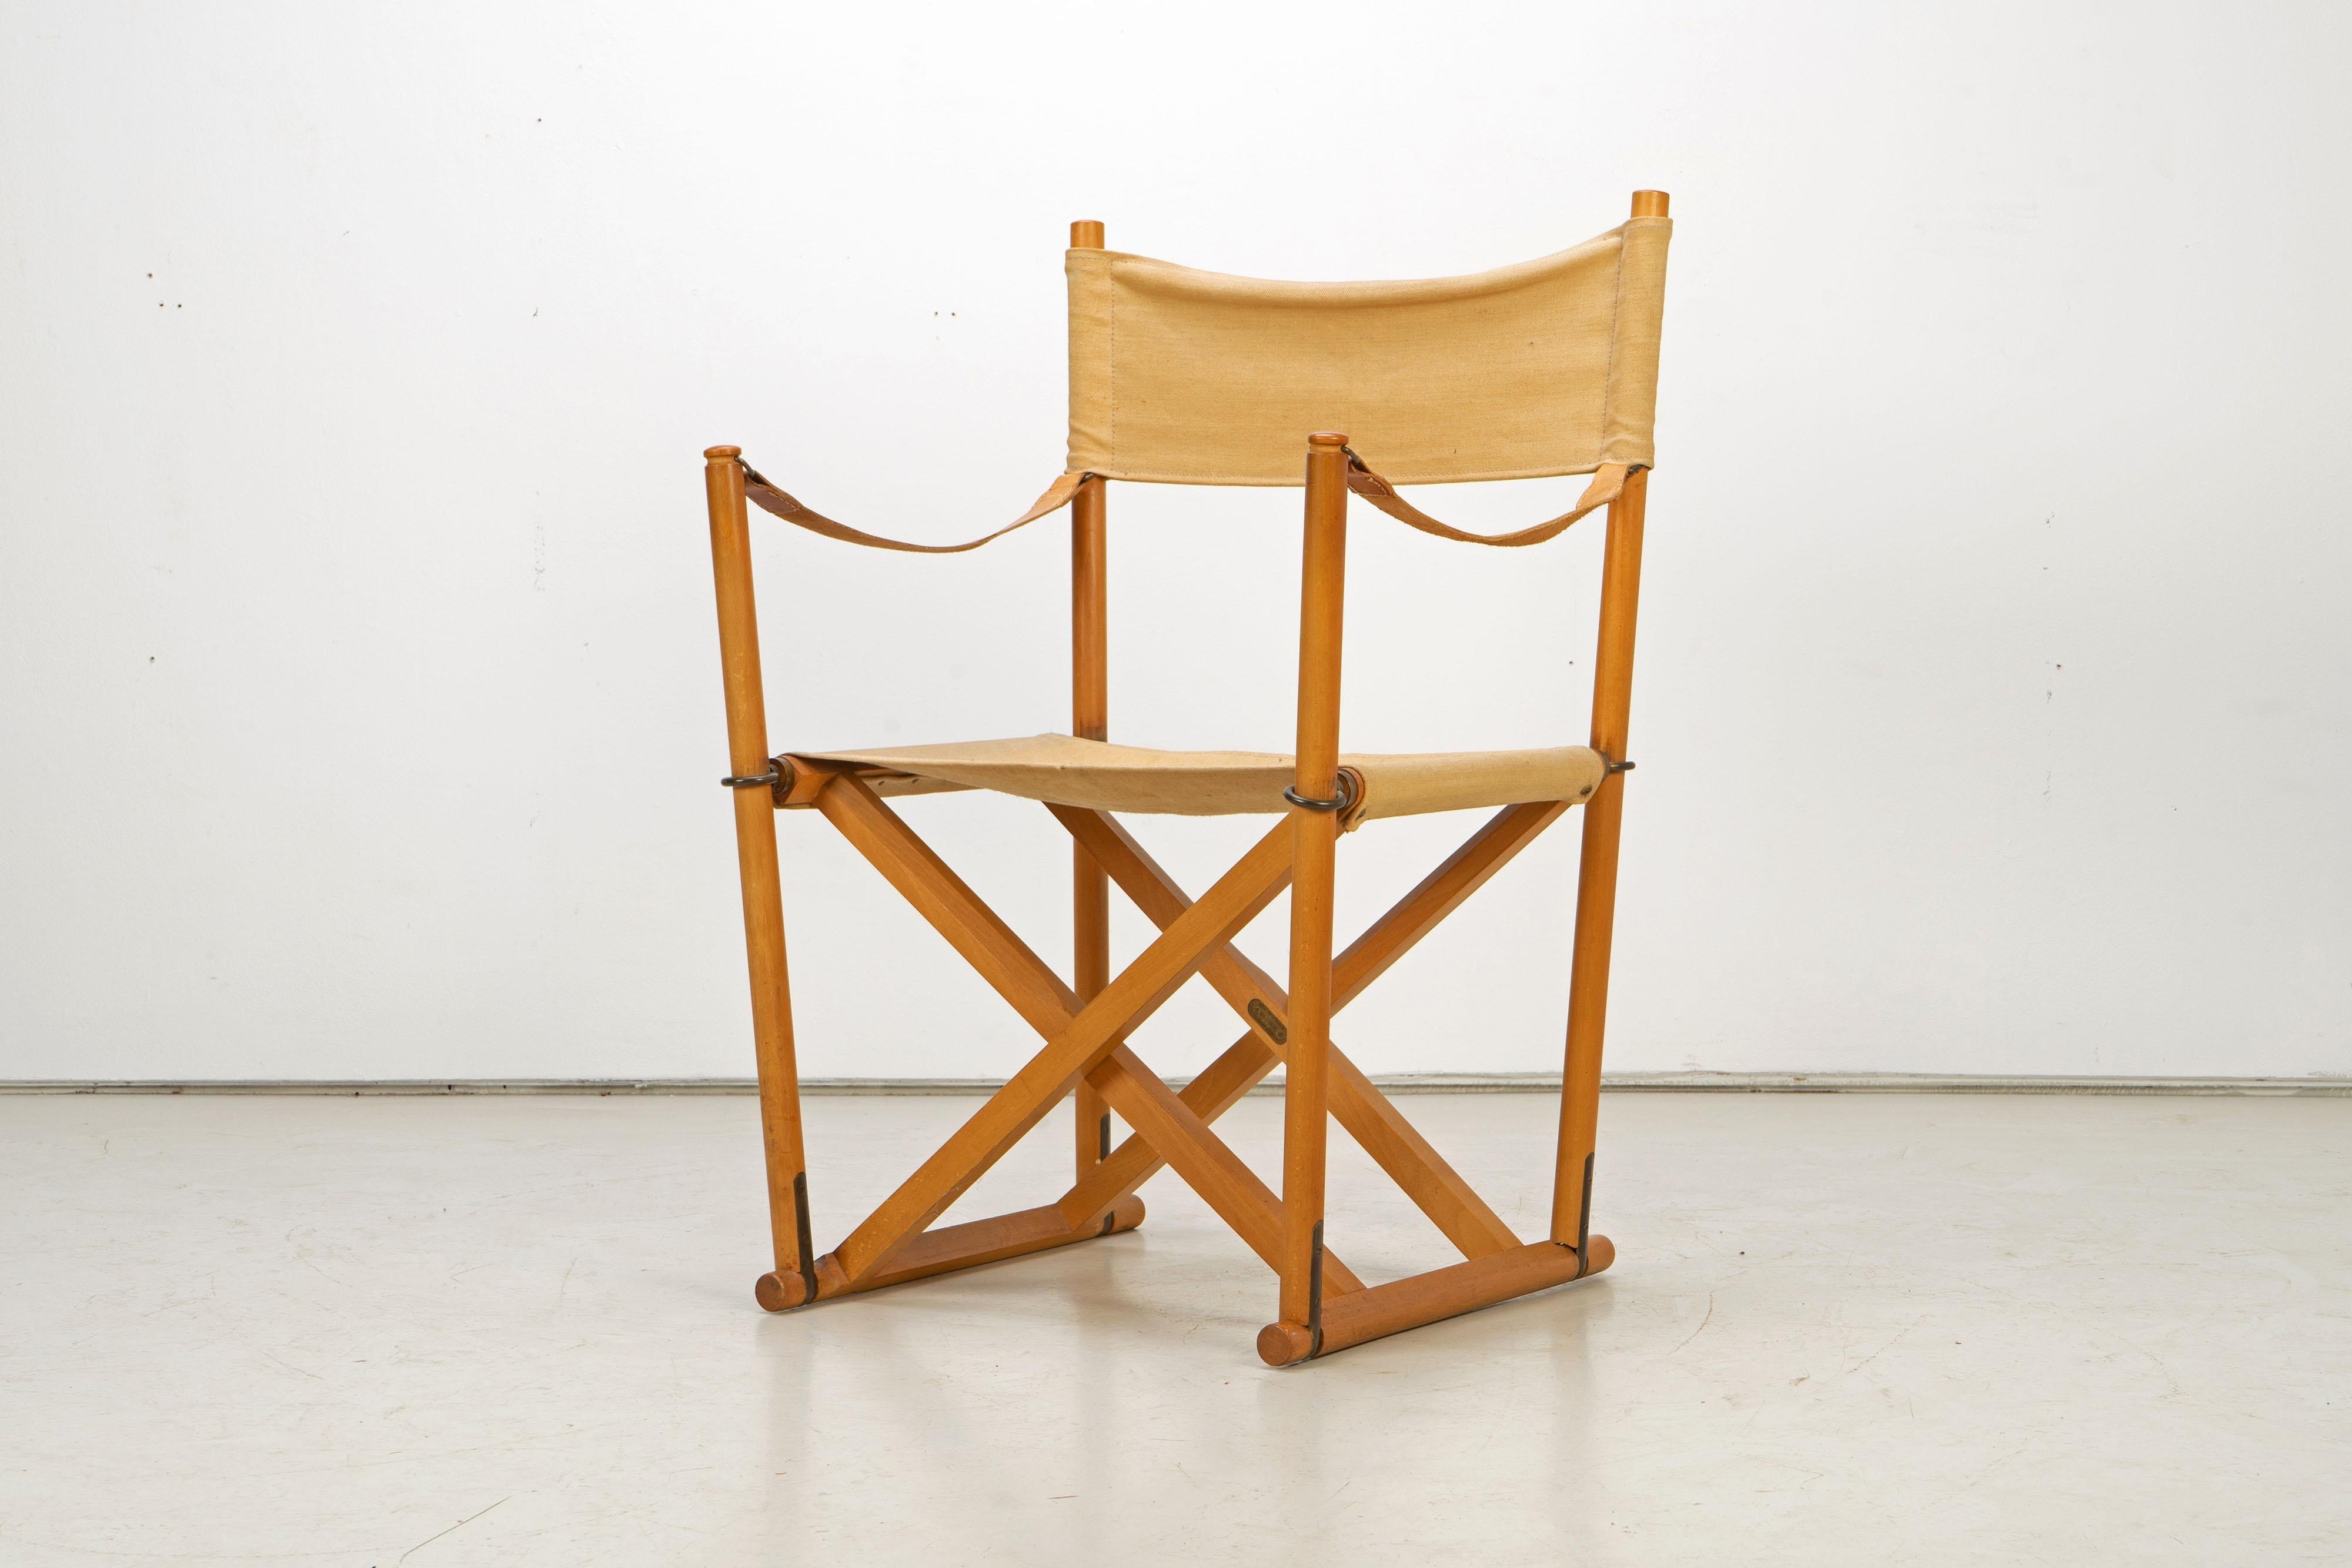 Magnifique fauteuil safari patiné de Mogens Koch, fabriqué dans les années 1960.